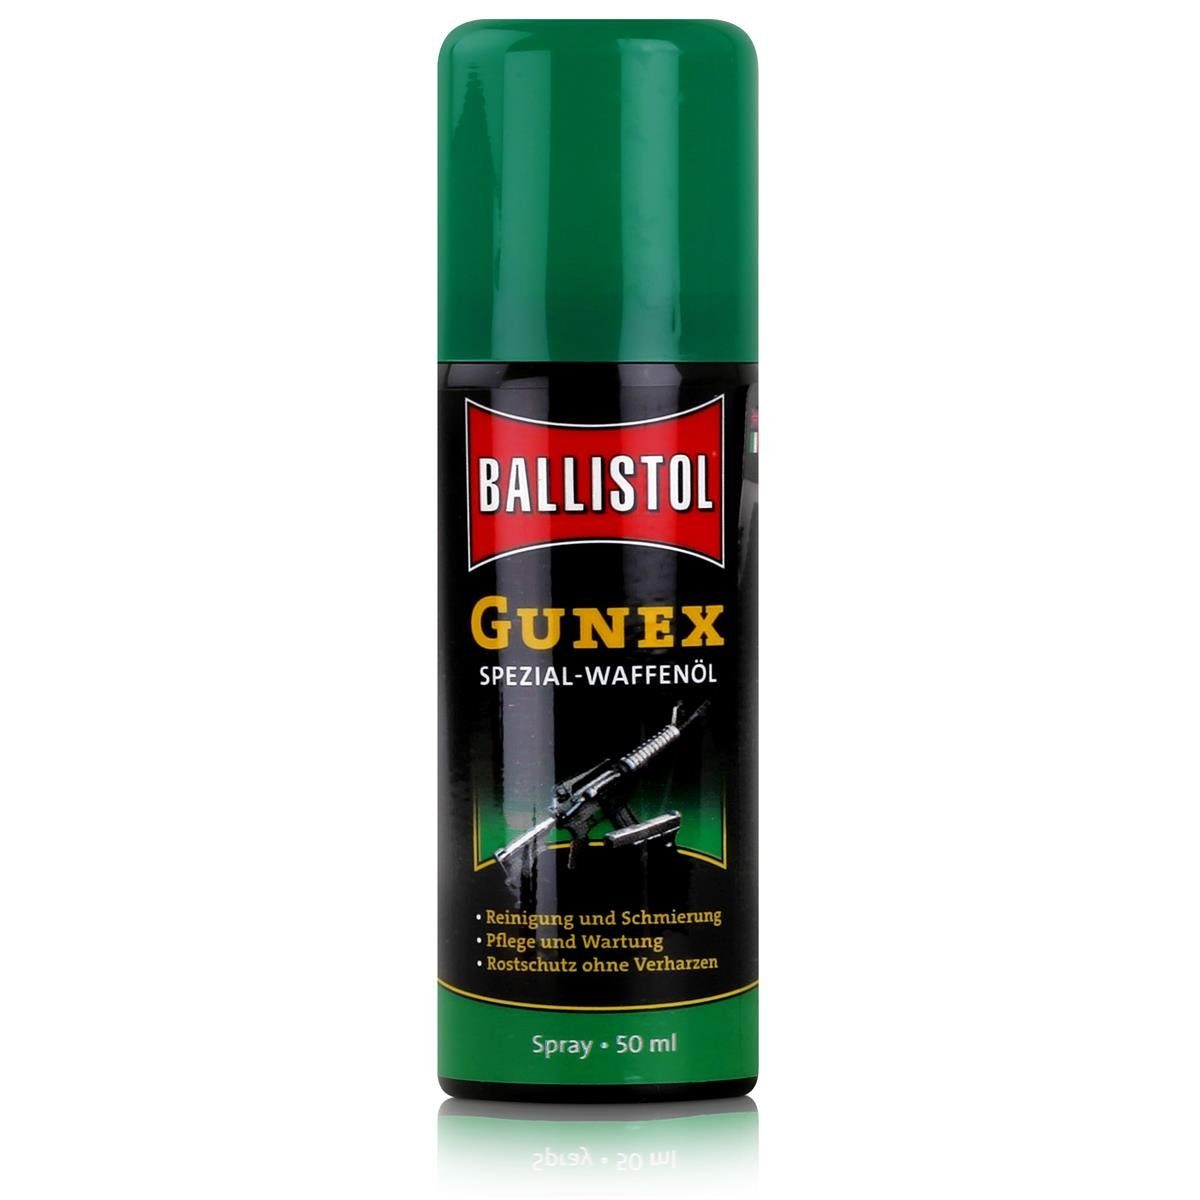 Ballistol Multifunktionsöl Ballistol Gunex Spezial-Waffenöl Spray 50ml - Rostschutz (1er Pack)